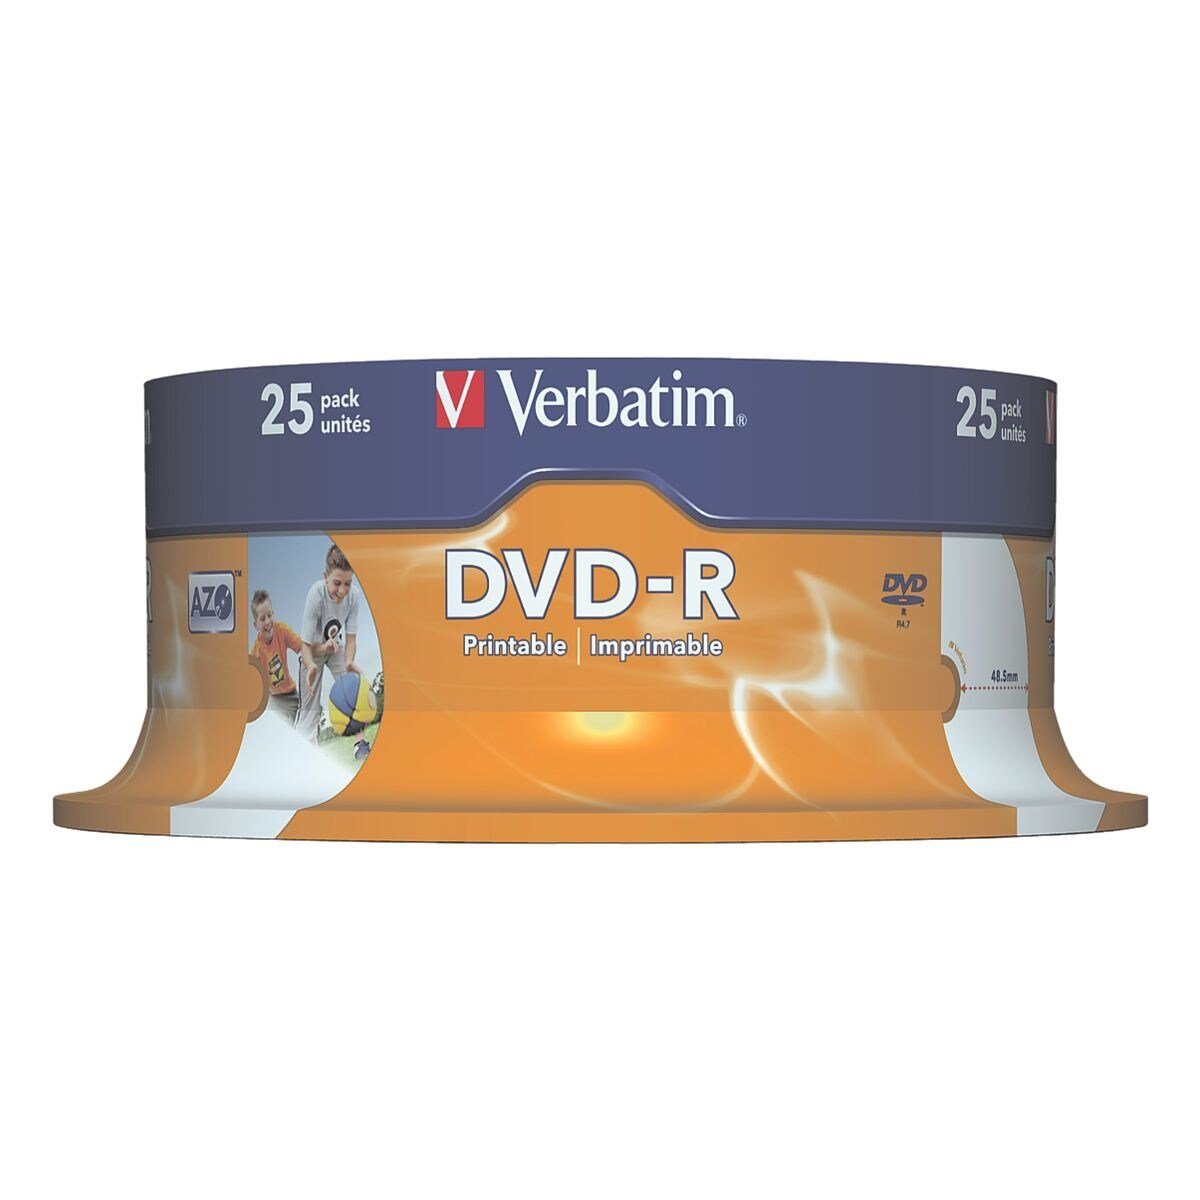 DVD-Rohling bedruckbar, 4,7 Feuchtigkeit gegen widerstandsfähig GB, und DVD-R, Printable Verbatim Wasser